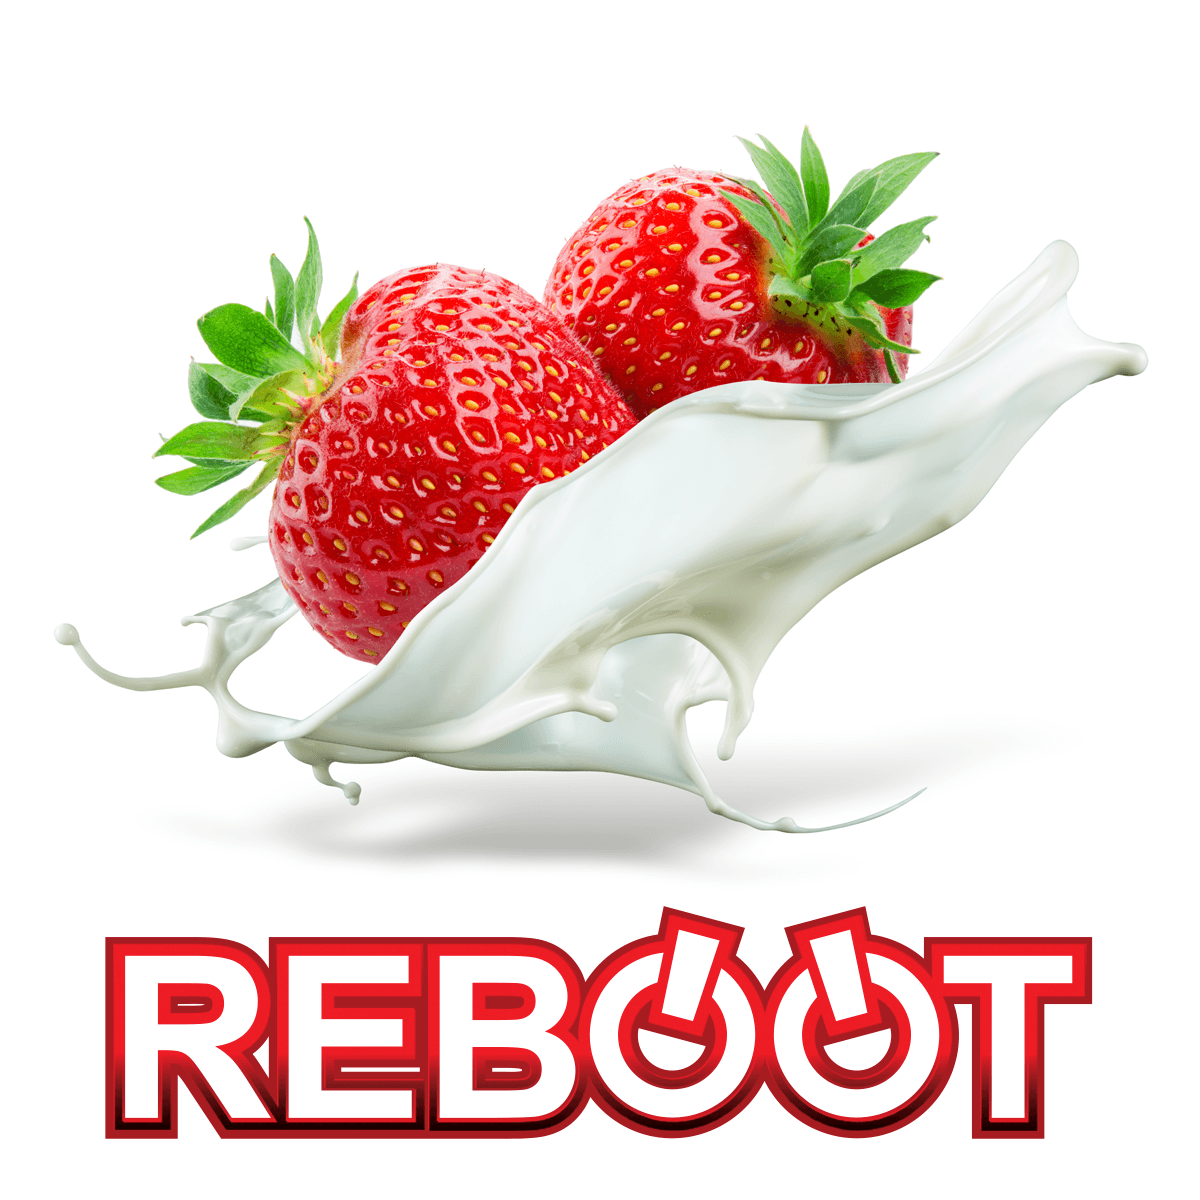 Strawberries and Cream - Reboot - The Vape Store